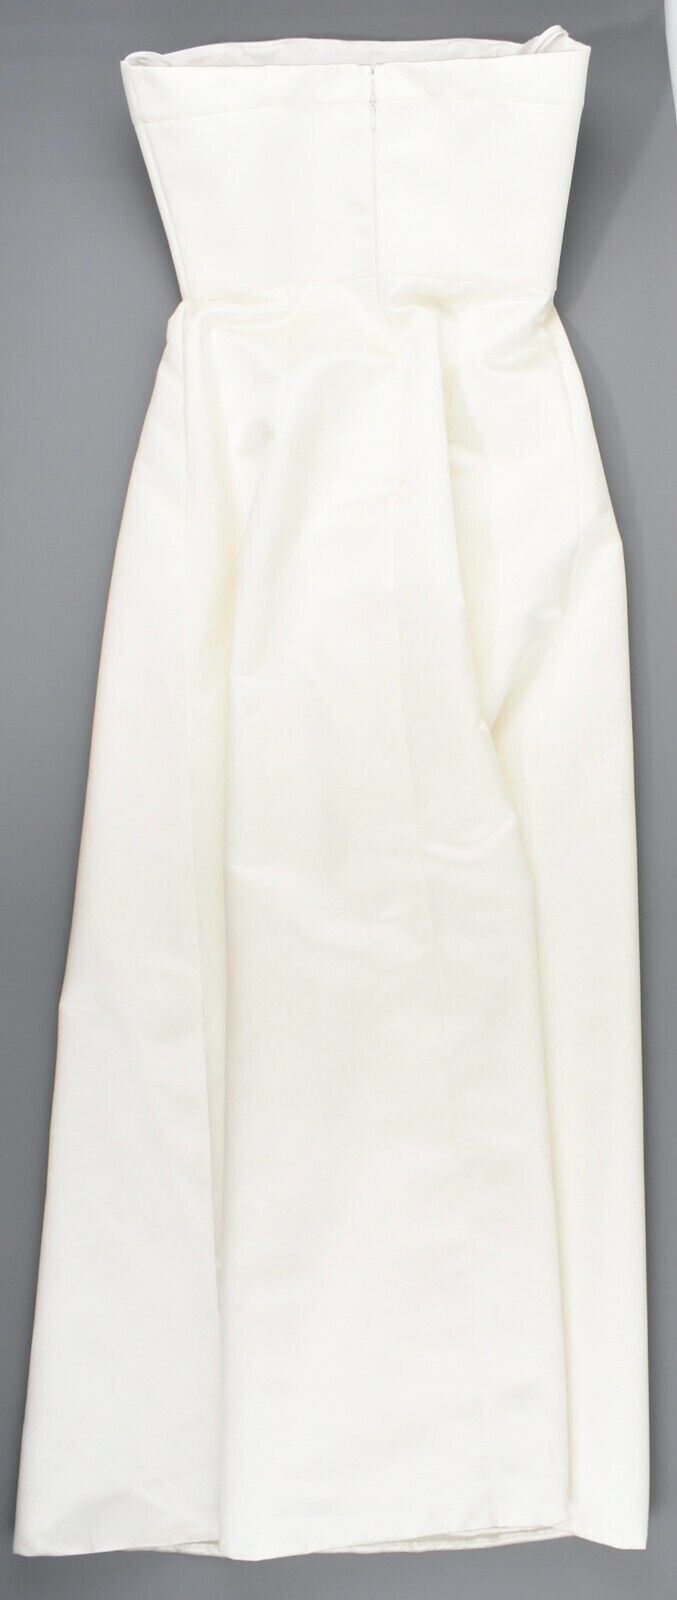 DAVID FIELDEN Women's Evening Gown, Cream Satin Long Dress, size UK 14